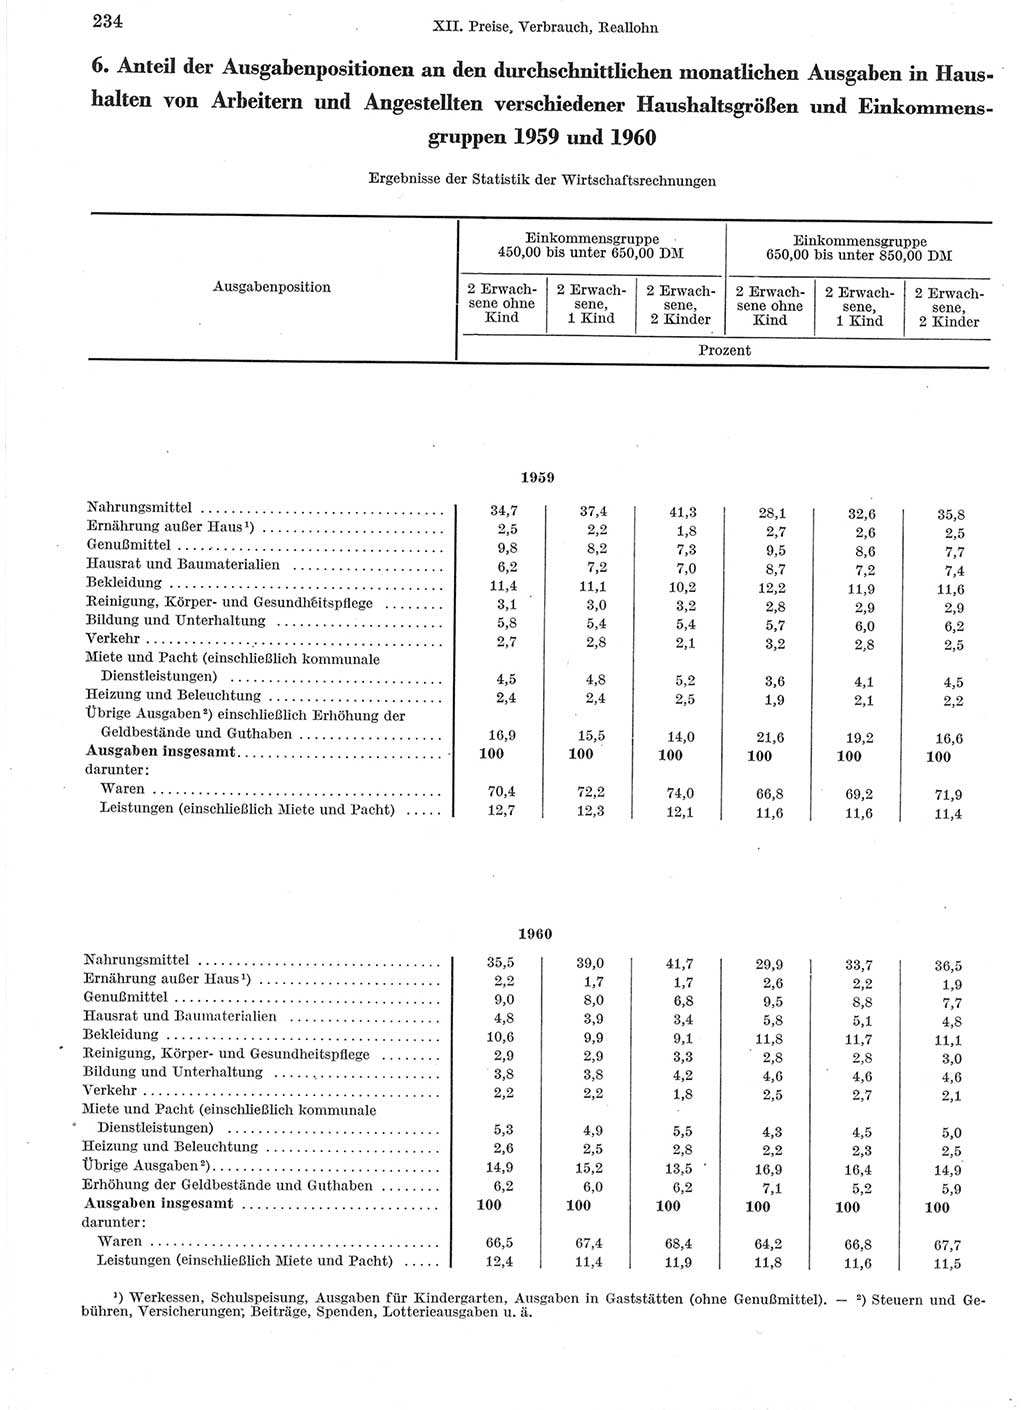 Statistisches Jahrbuch der Deutschen Demokratischen Republik (DDR) 1960-1961, Seite 234 (Stat. Jb. DDR 1960-1961, S. 234)